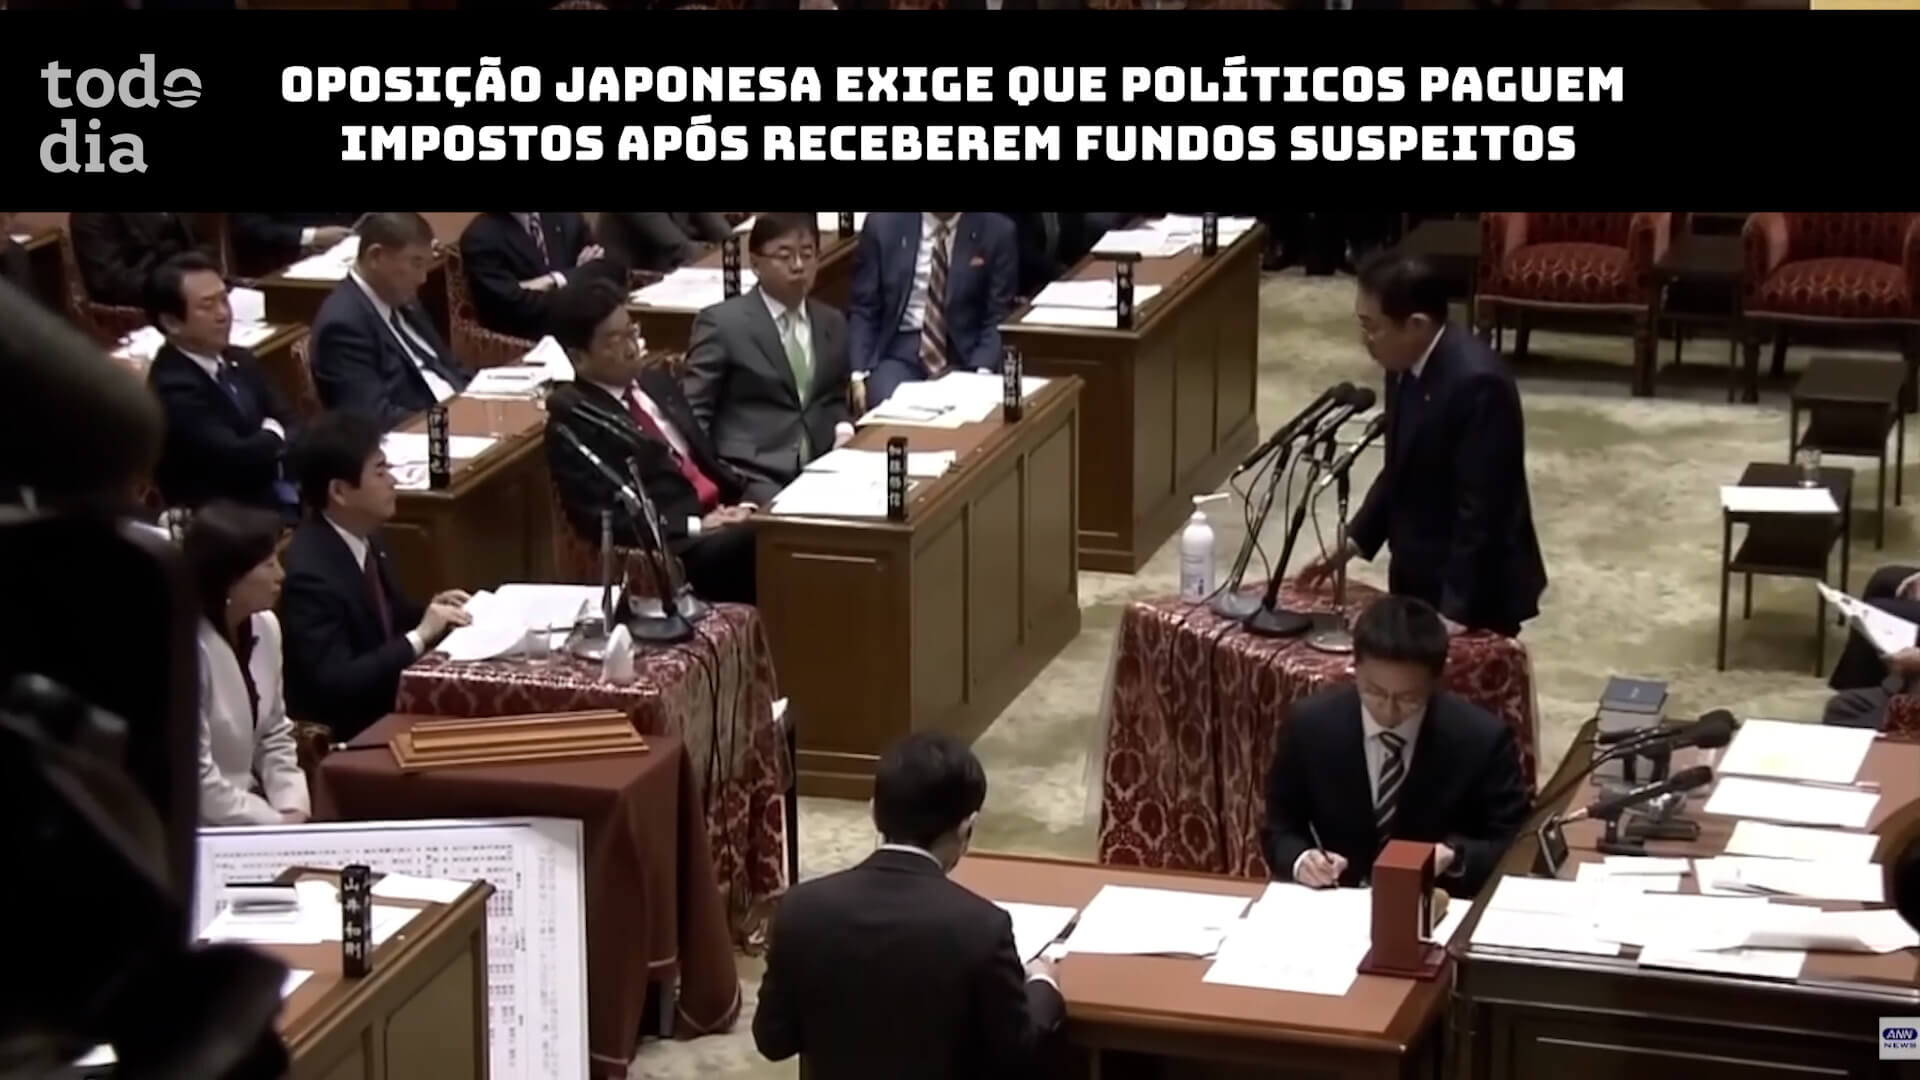 Oposição japonesa exige que políticos paguem impostos após receberem fundos suspeitos